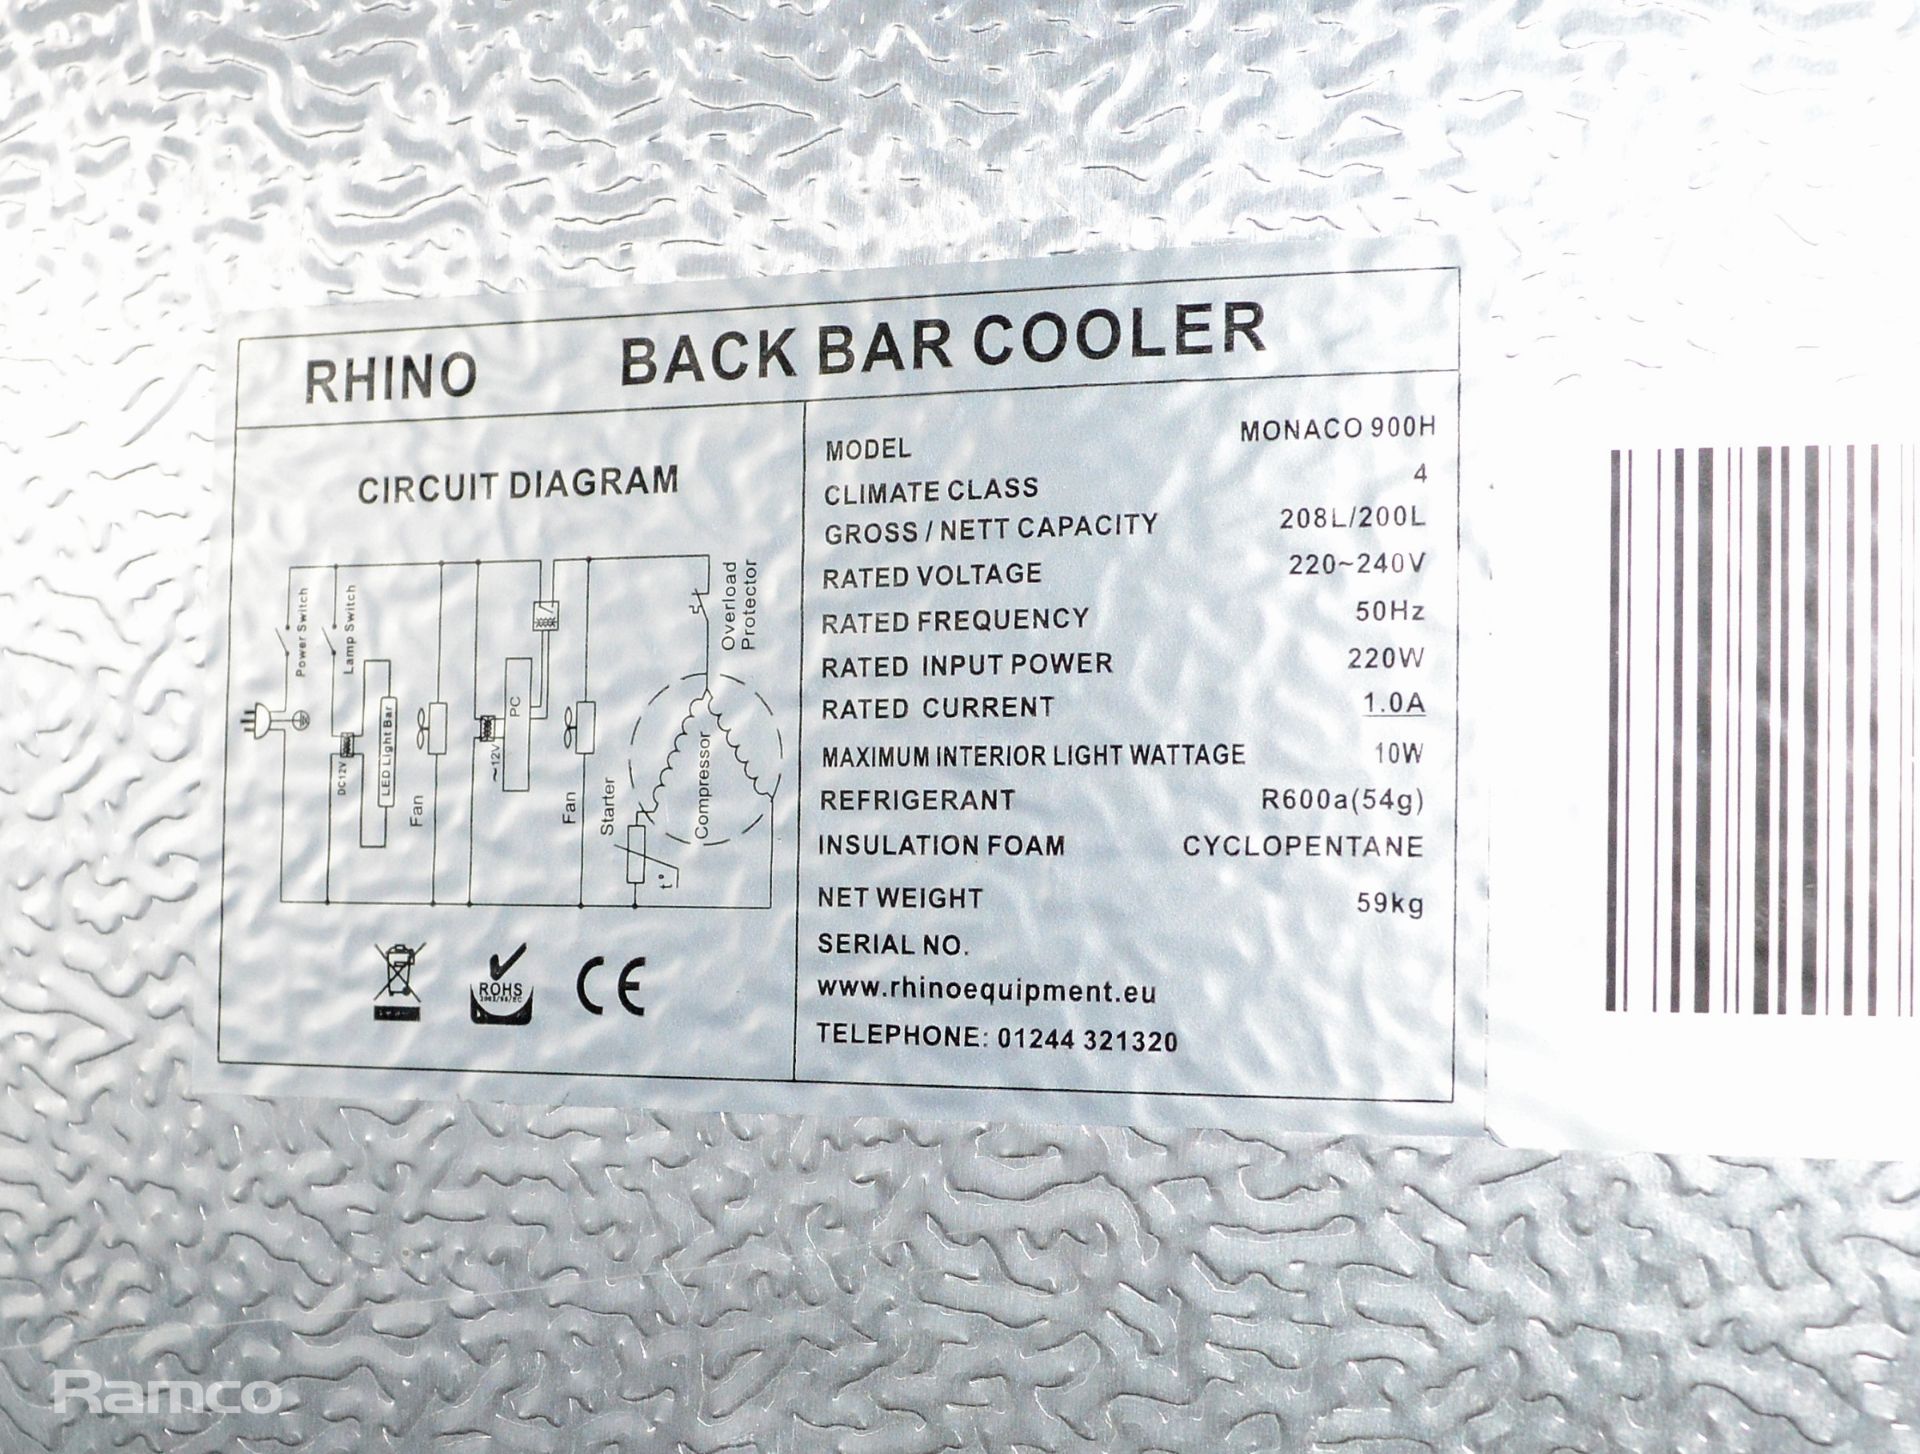 Rhino Monaco 900H 2 door back bar cooler 90 x 50 x 90cm & Husky C2S-865-BK 2 sliding door bar back - Image 7 of 7